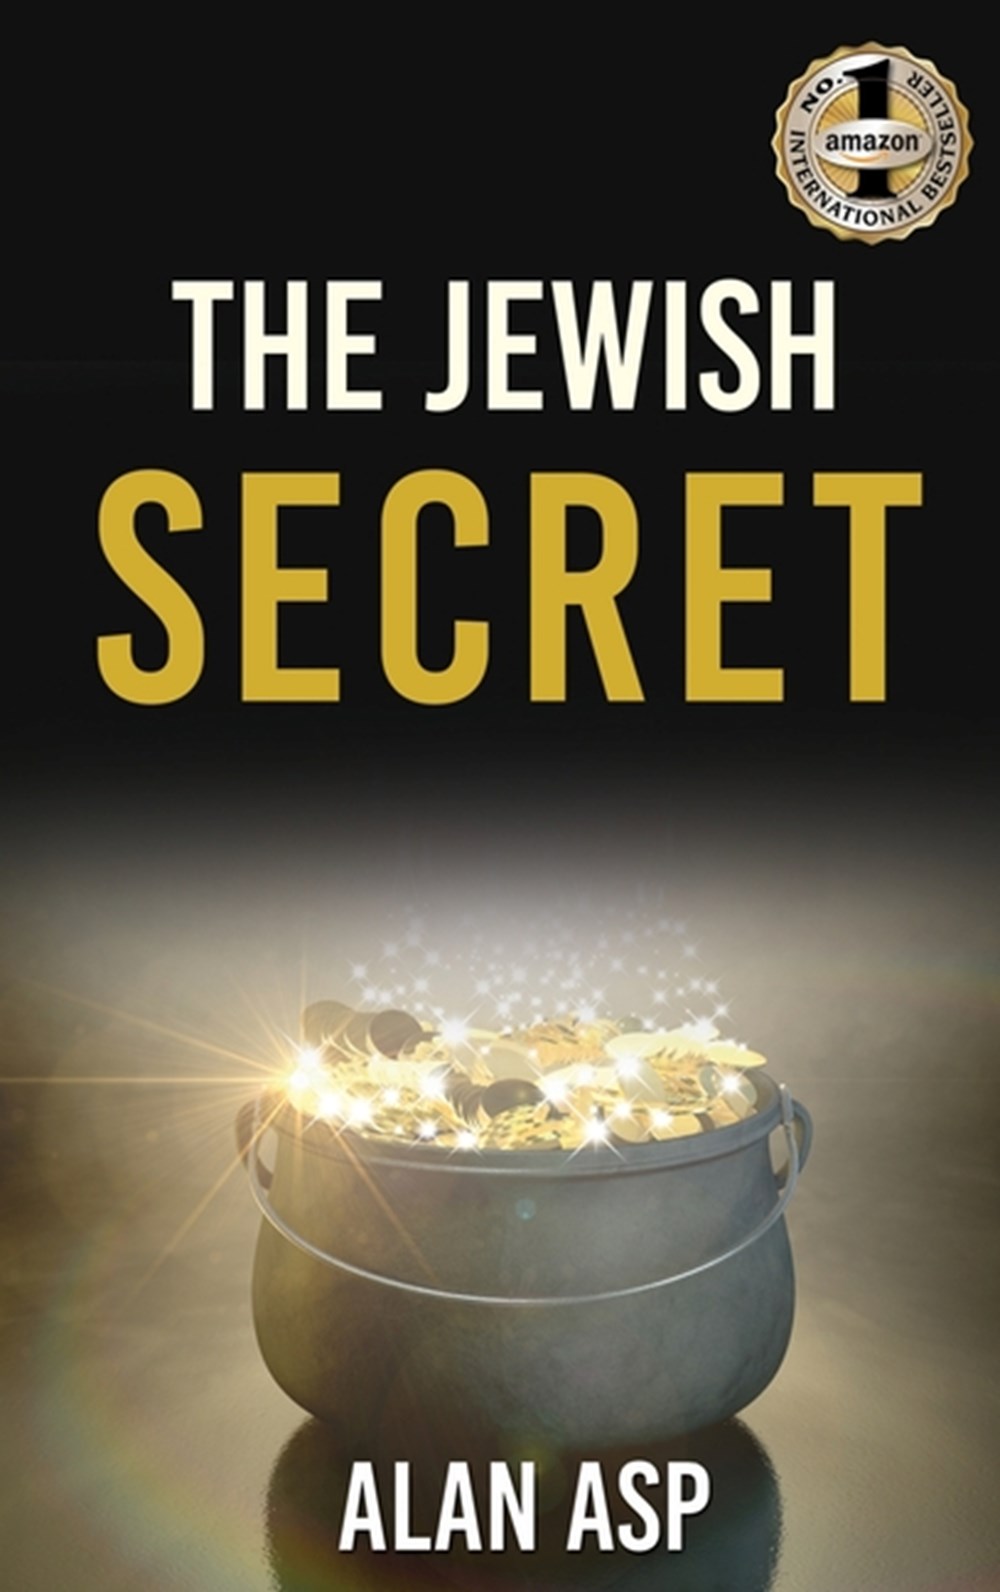 Jewish Secret